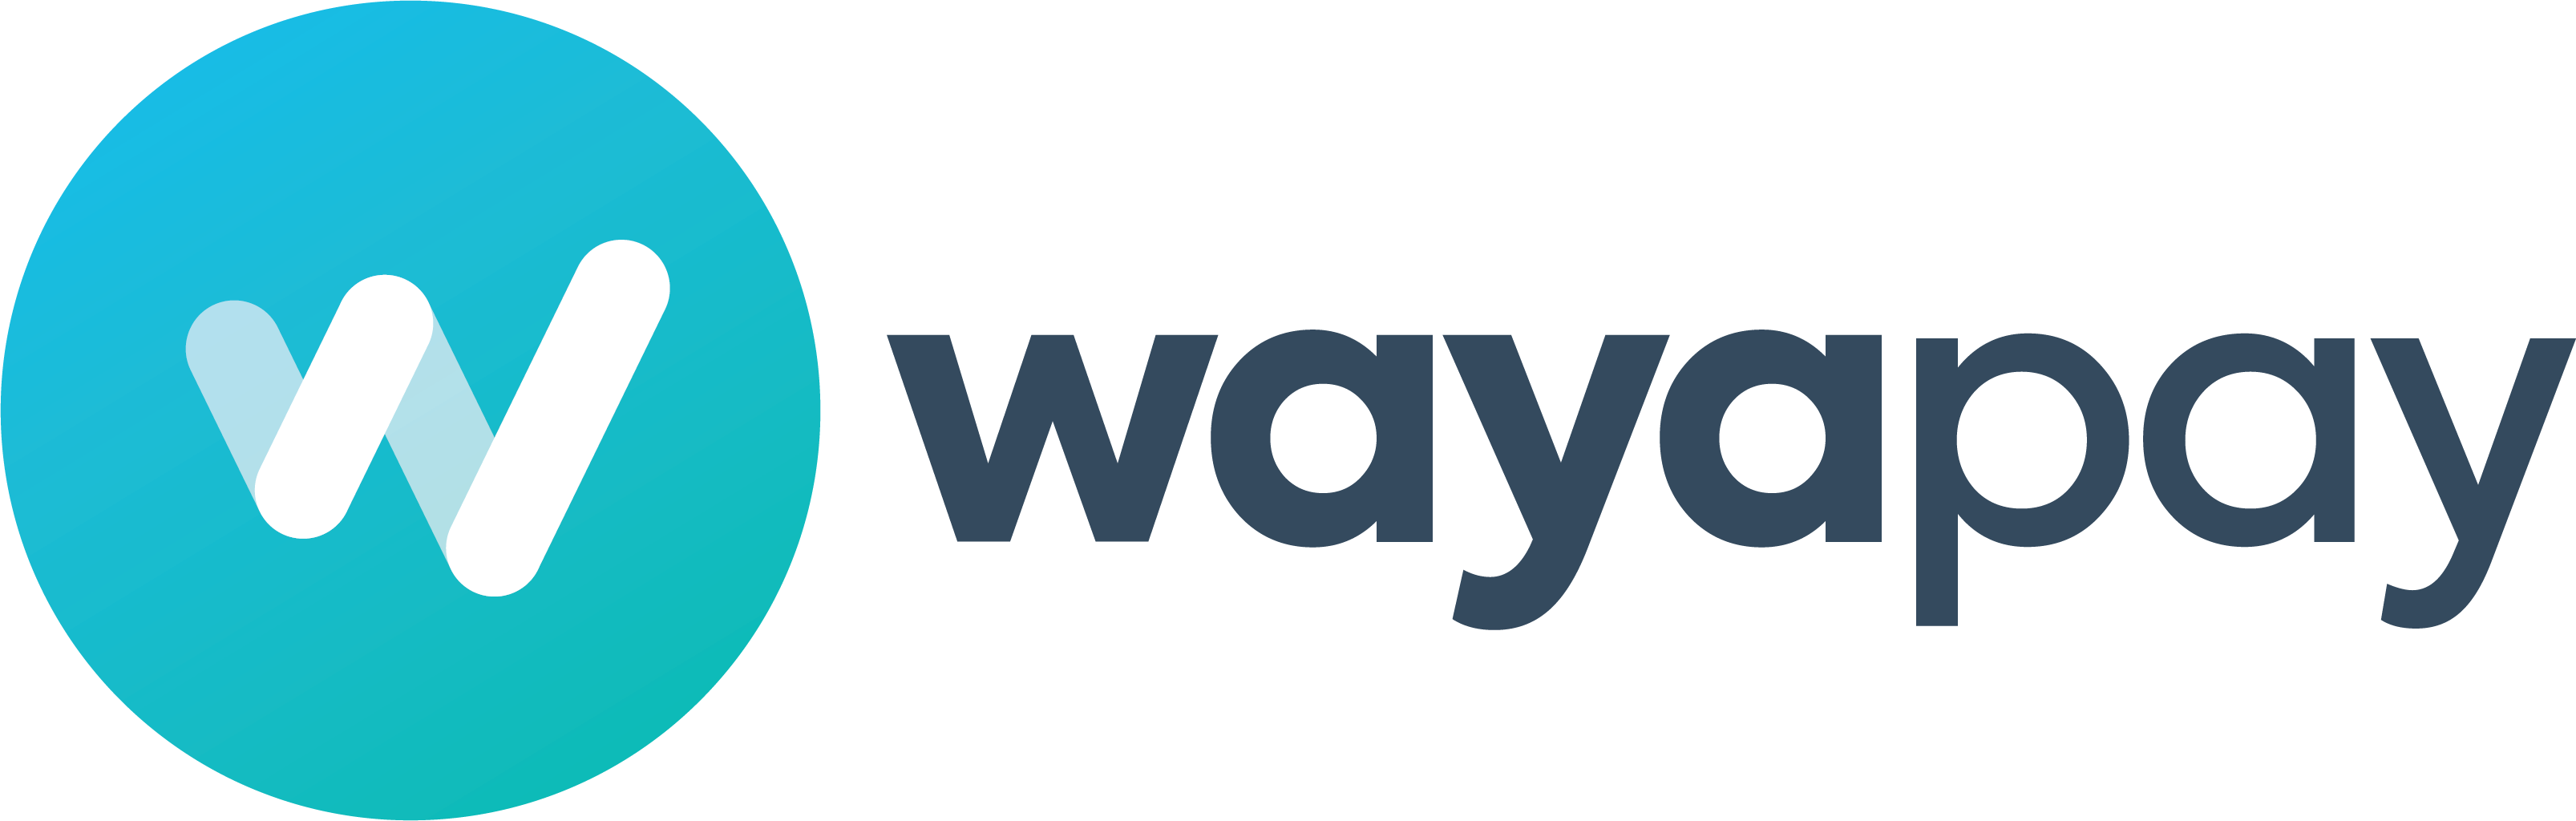 Wayapay